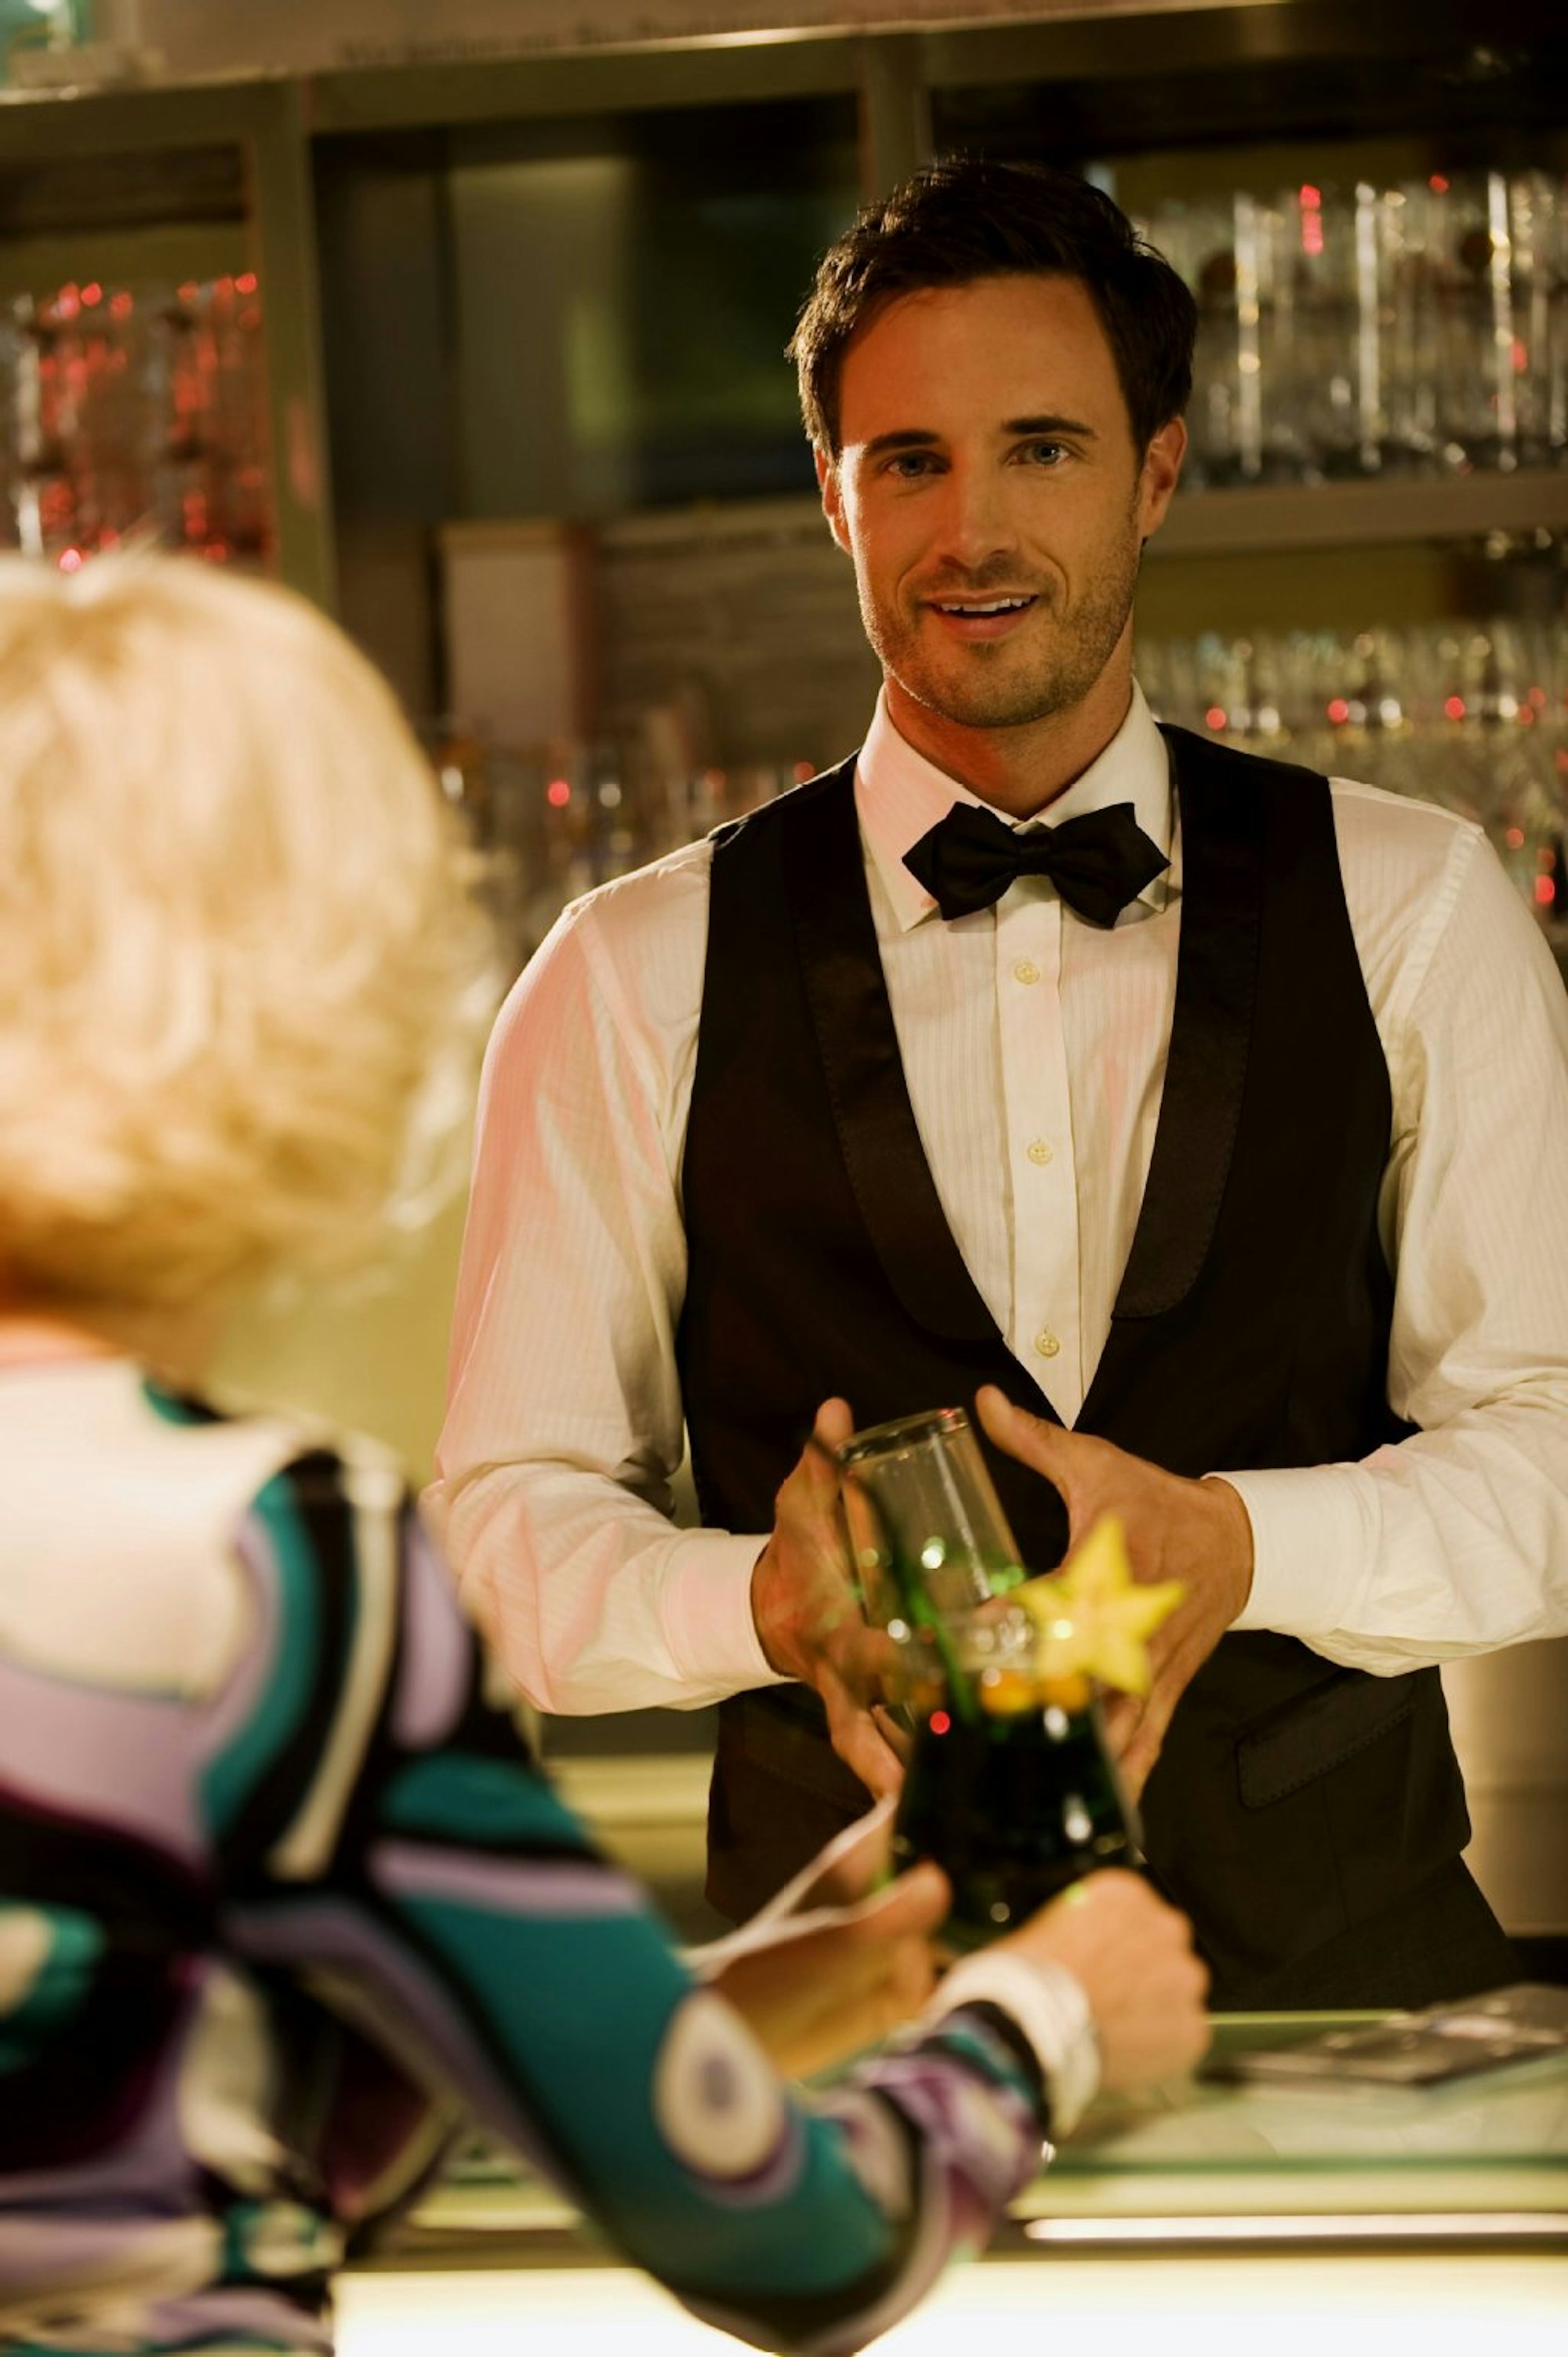 Barkeeper kennen ihre Gäste gut und können beim Kontakteknüpfen helfen.